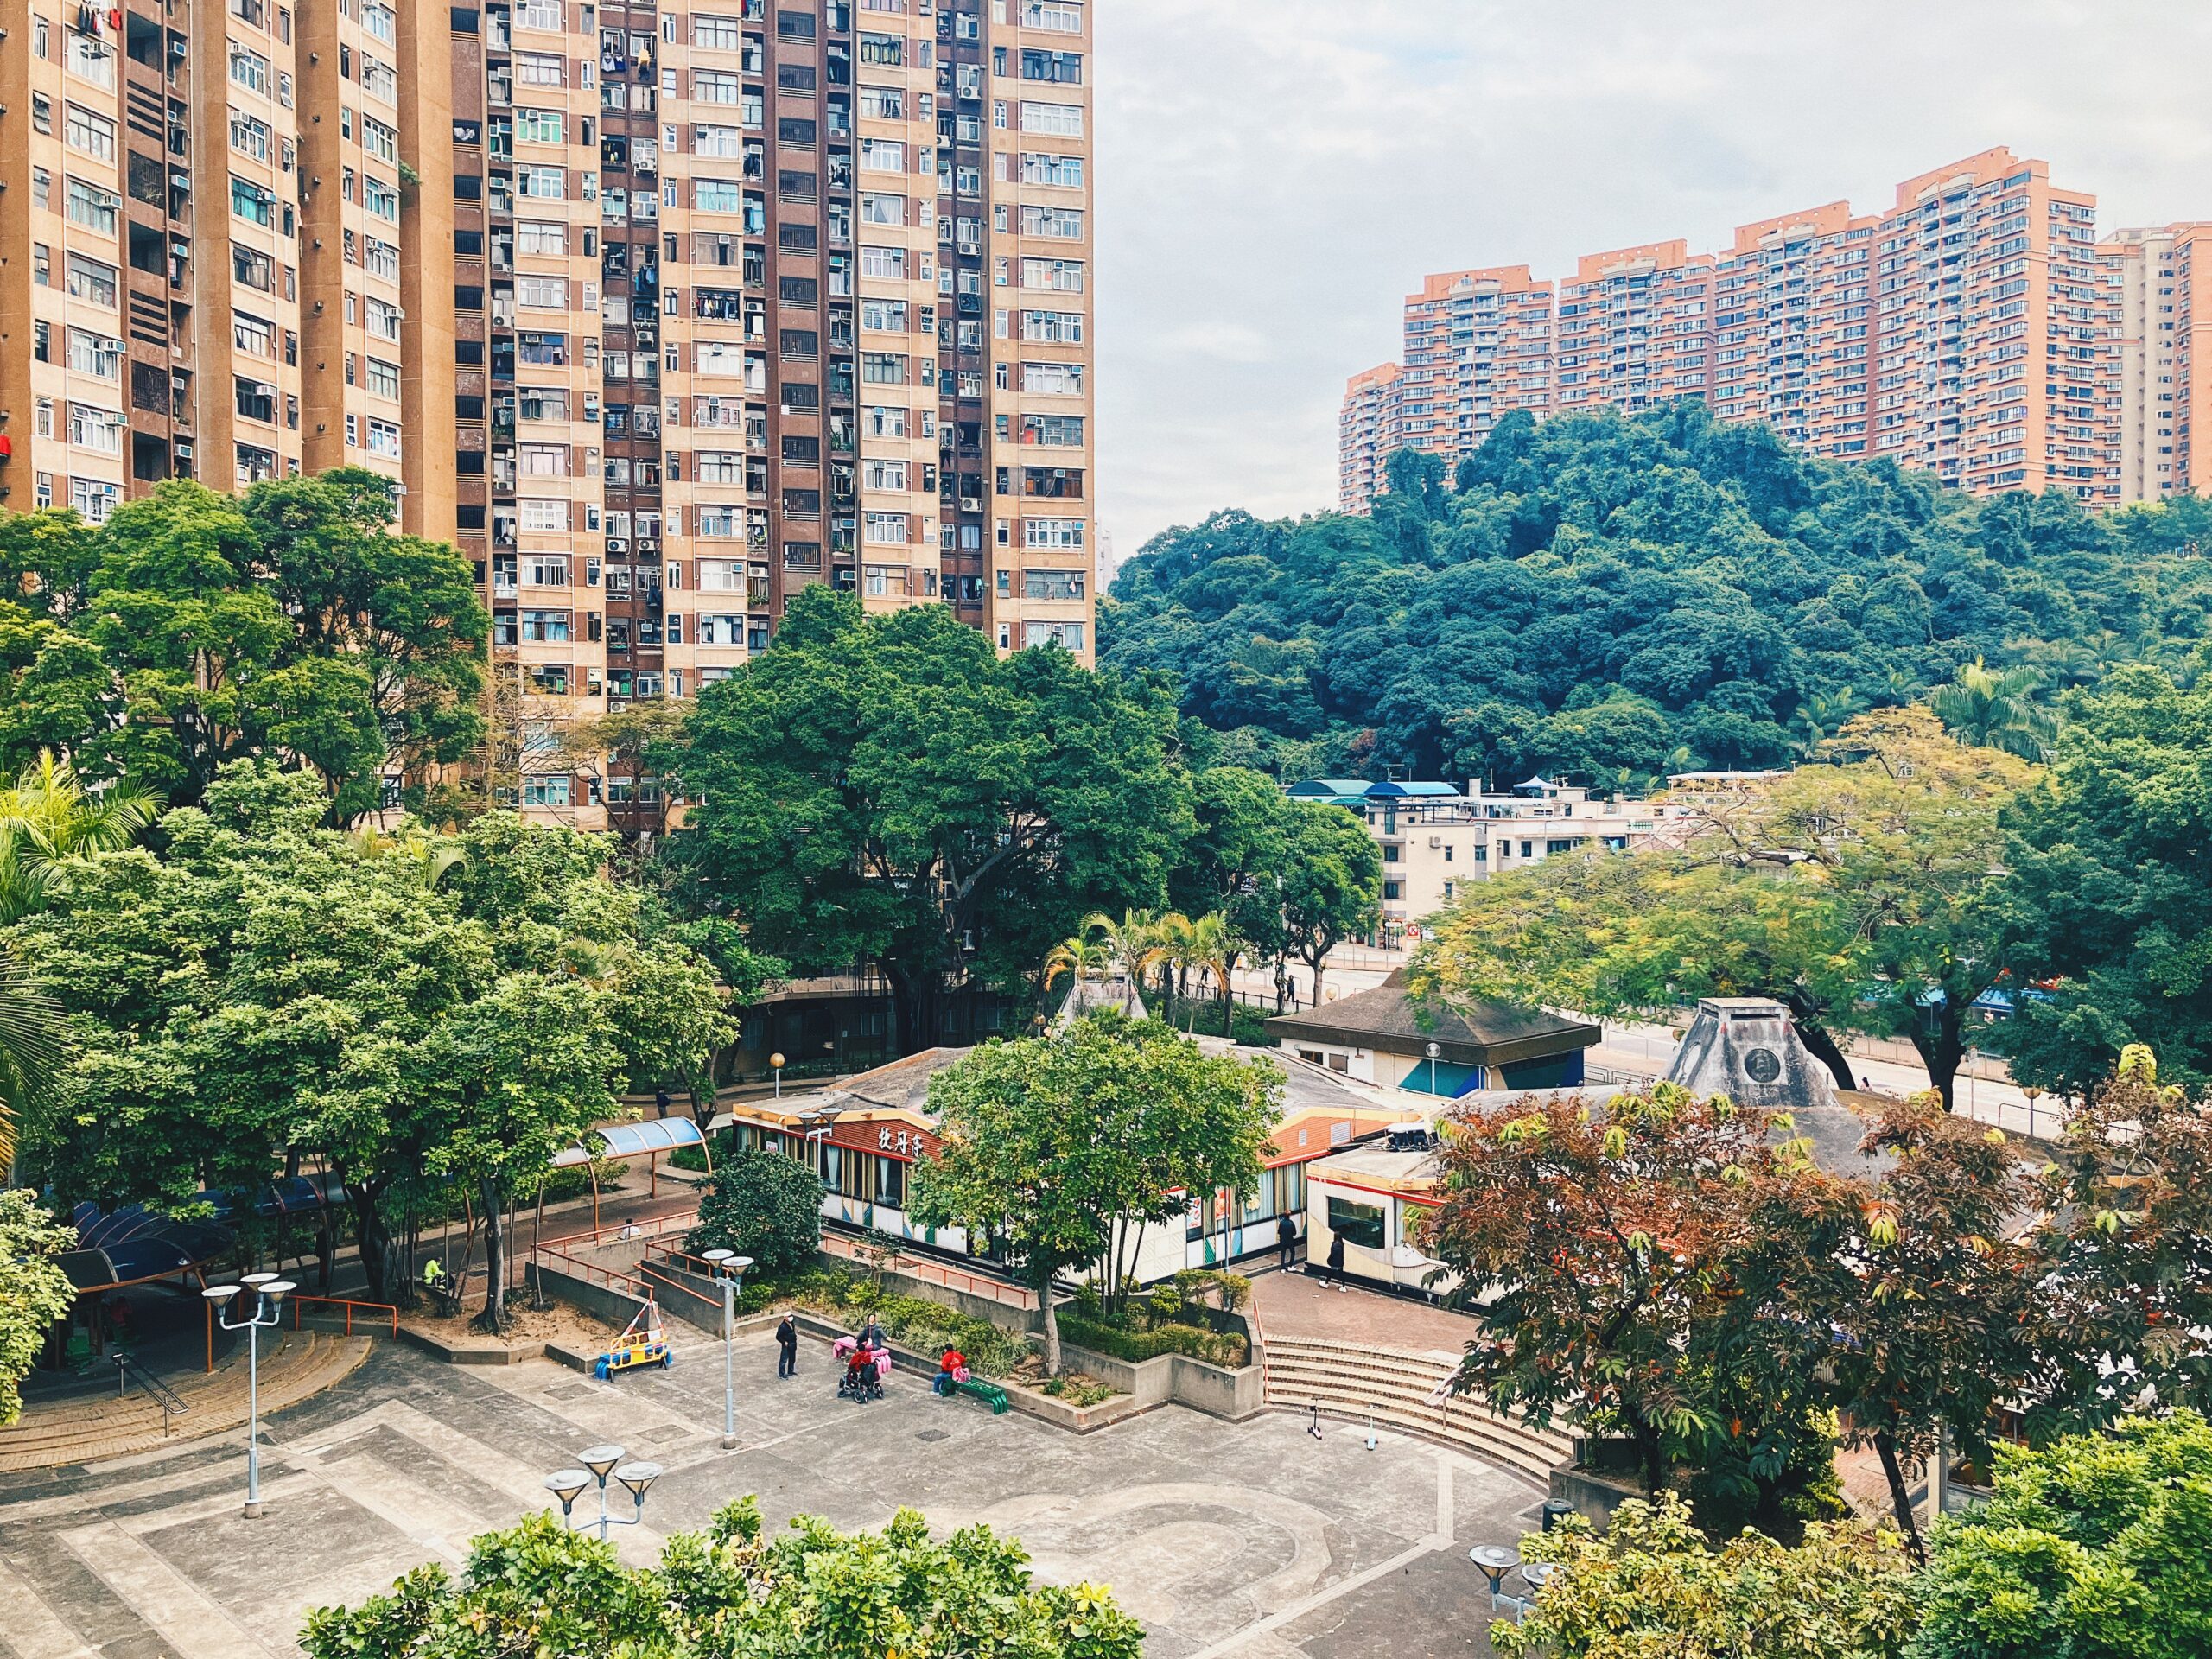 【香港公屋】大圍顯徑邨 設計走80年代流行歐洲風格